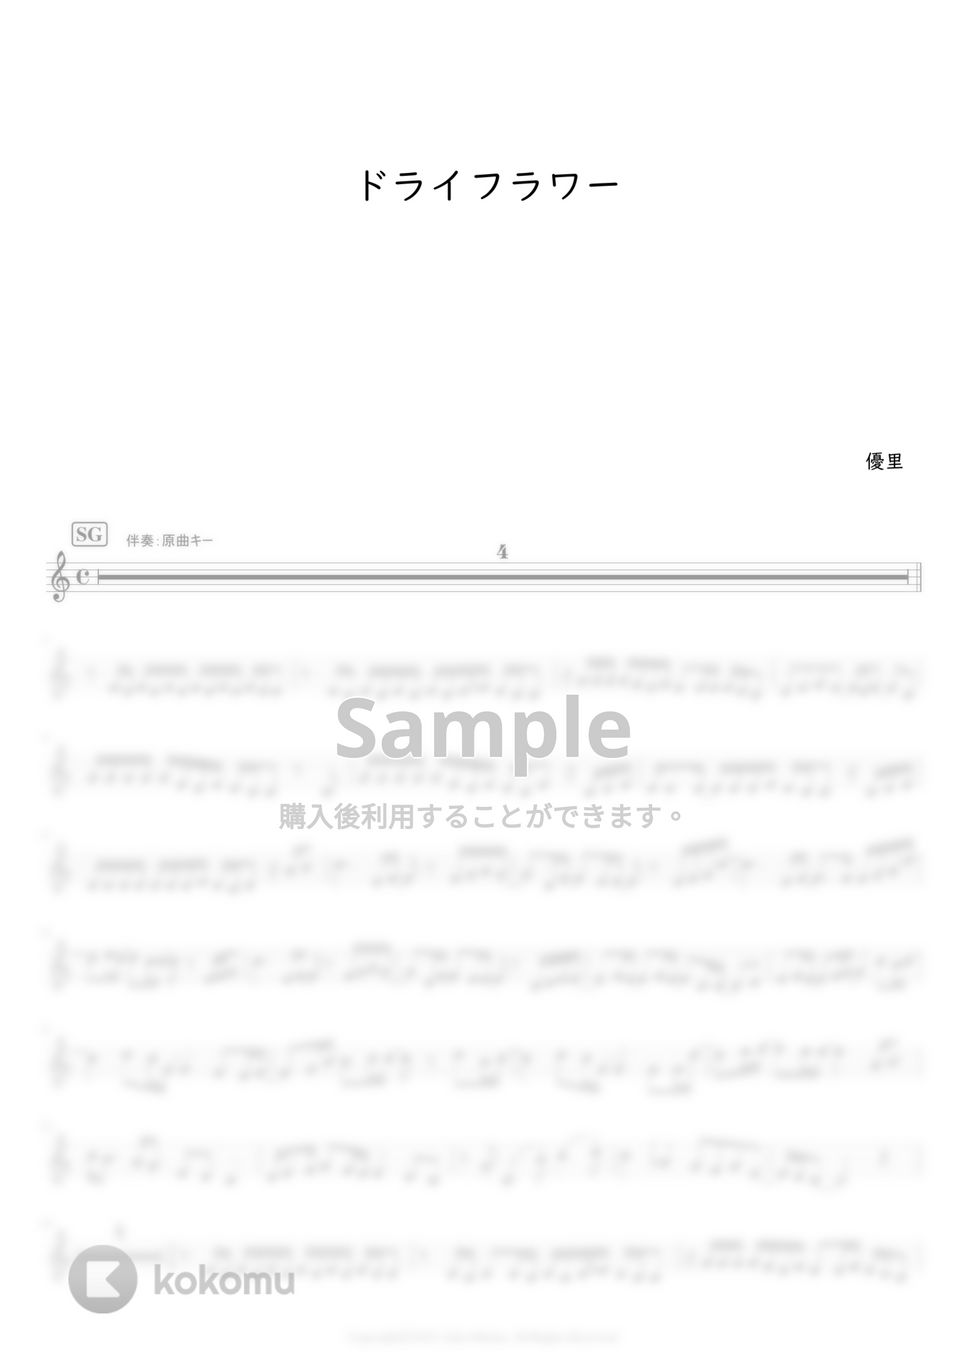 優里 - ドライフラワー (オカリナ用(SG管)メロディー譜) by もりたあいか